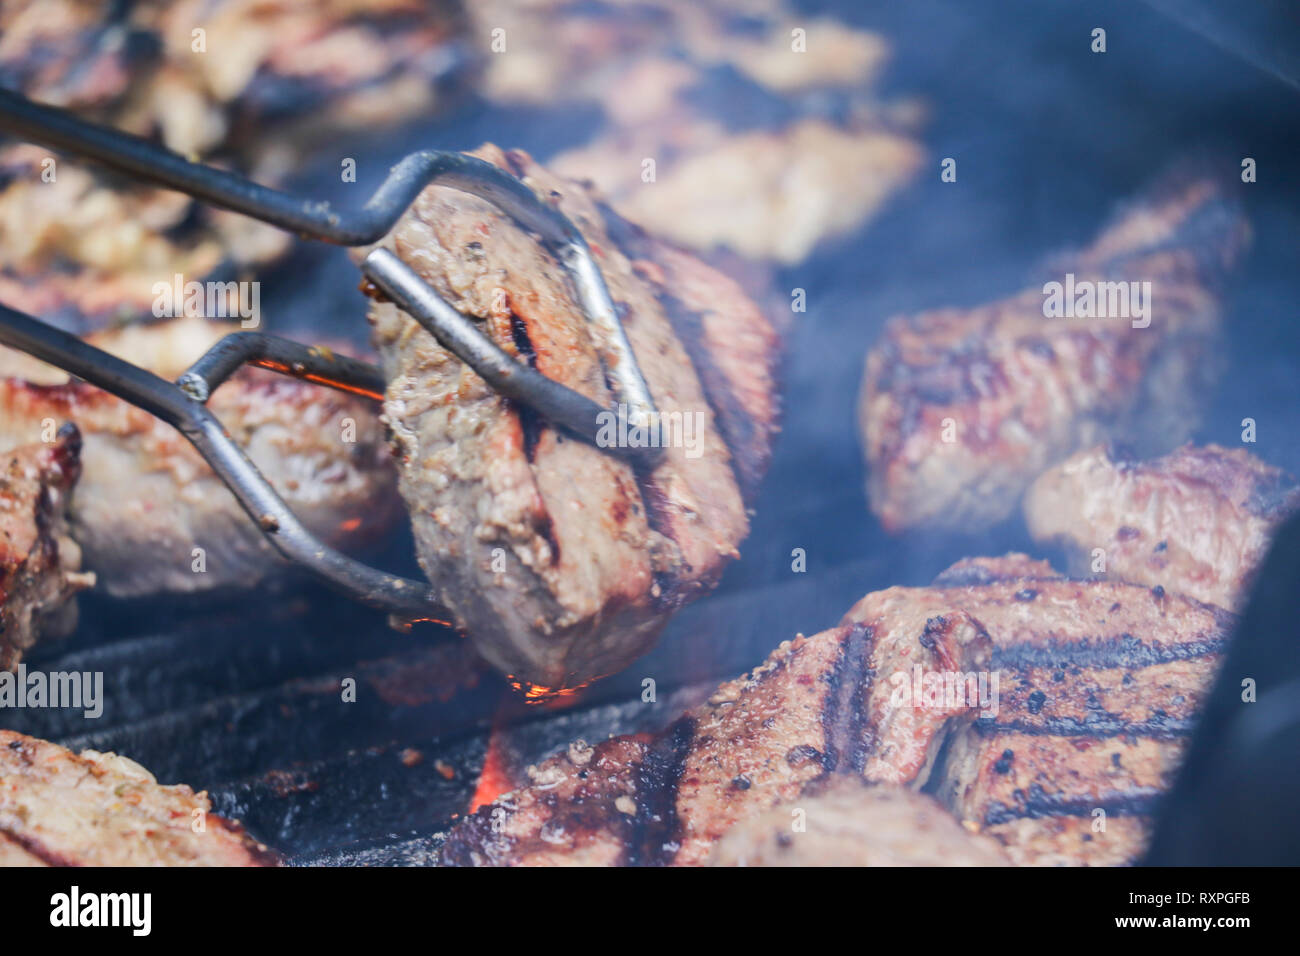 Sizzling, lecker Gegrilltes Steak und Hähnchen frisch aus der Grill an einem Familientreffen. Stockfoto